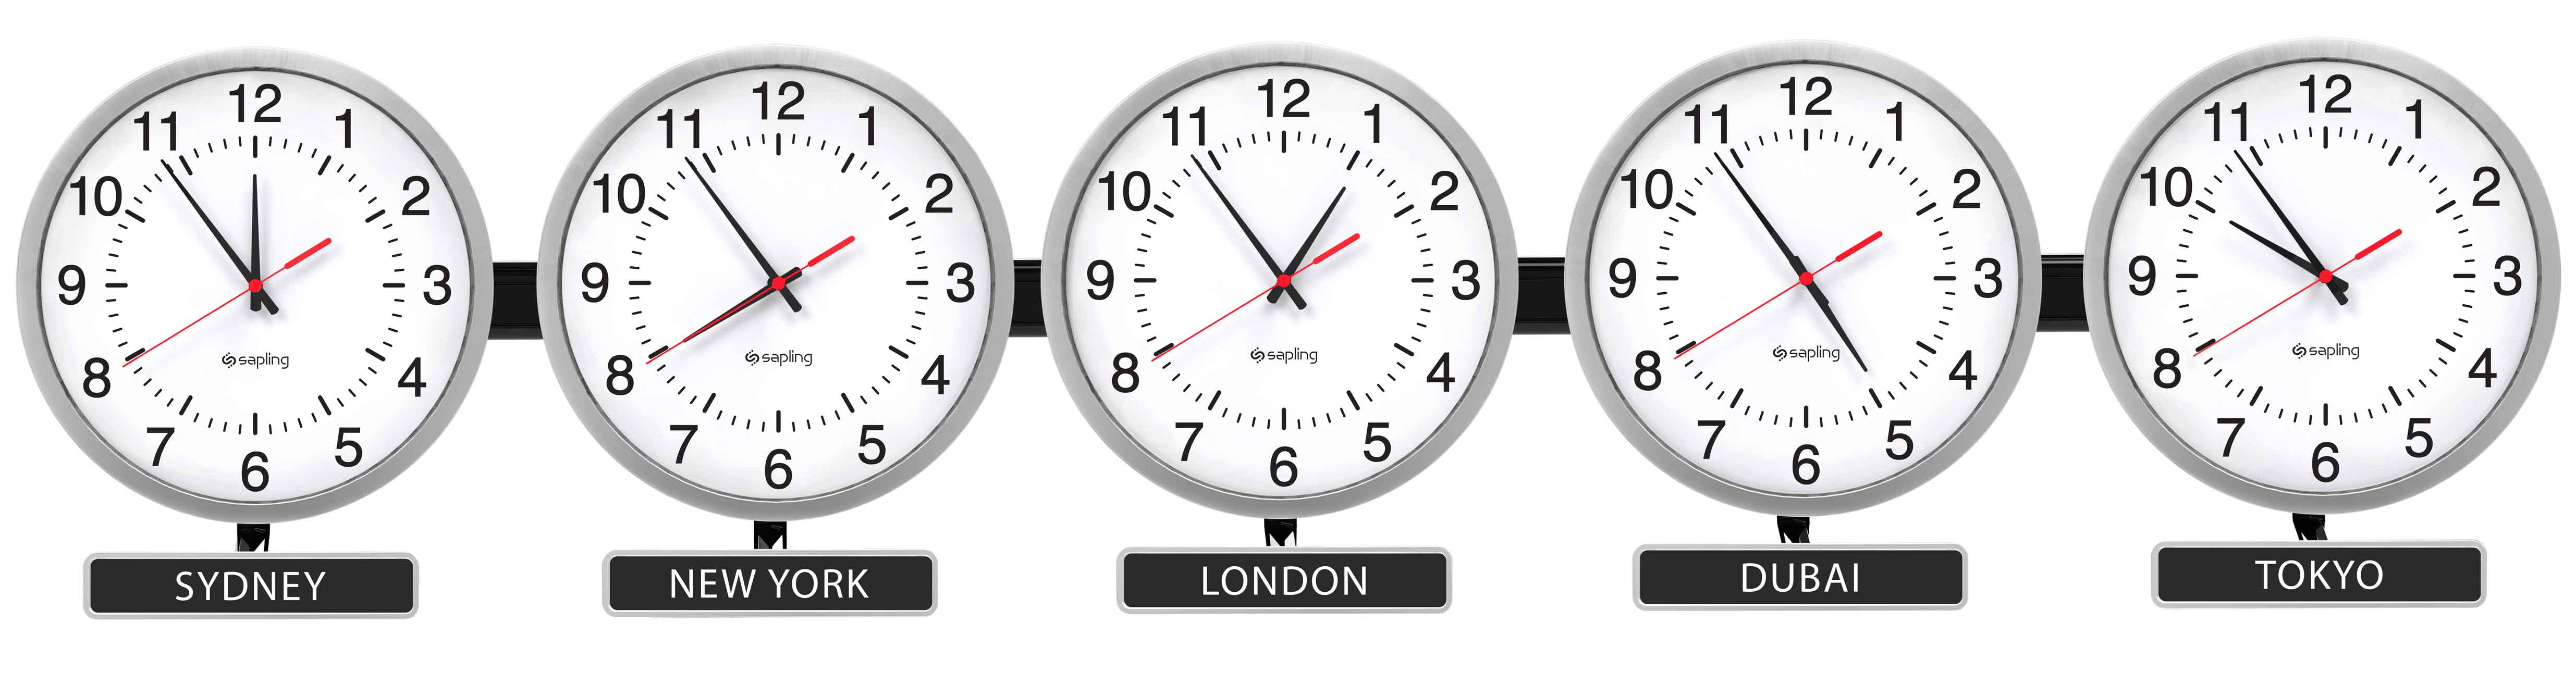 Время в иркутске по часам. Мировые часы. Часы мировые пояса. Мировые часы настенные. Часы настенные мировое время.